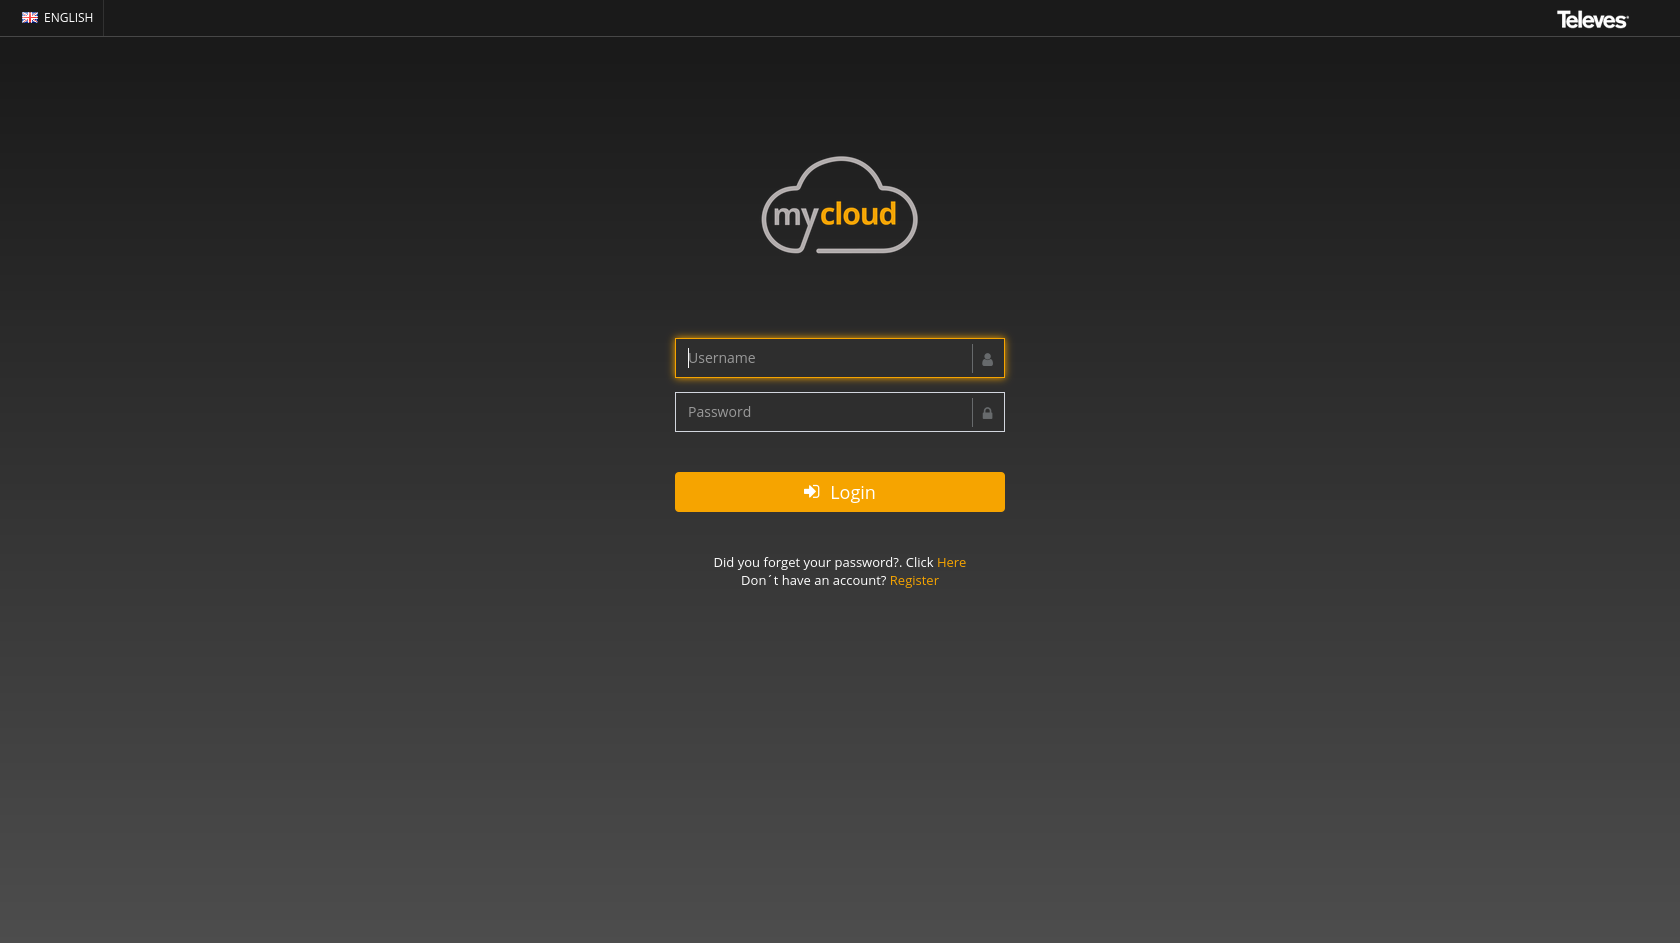 Accedi al portale My Cloud: inserisci il tuo account, quello utilizzato per registrare i tuoi strumenti